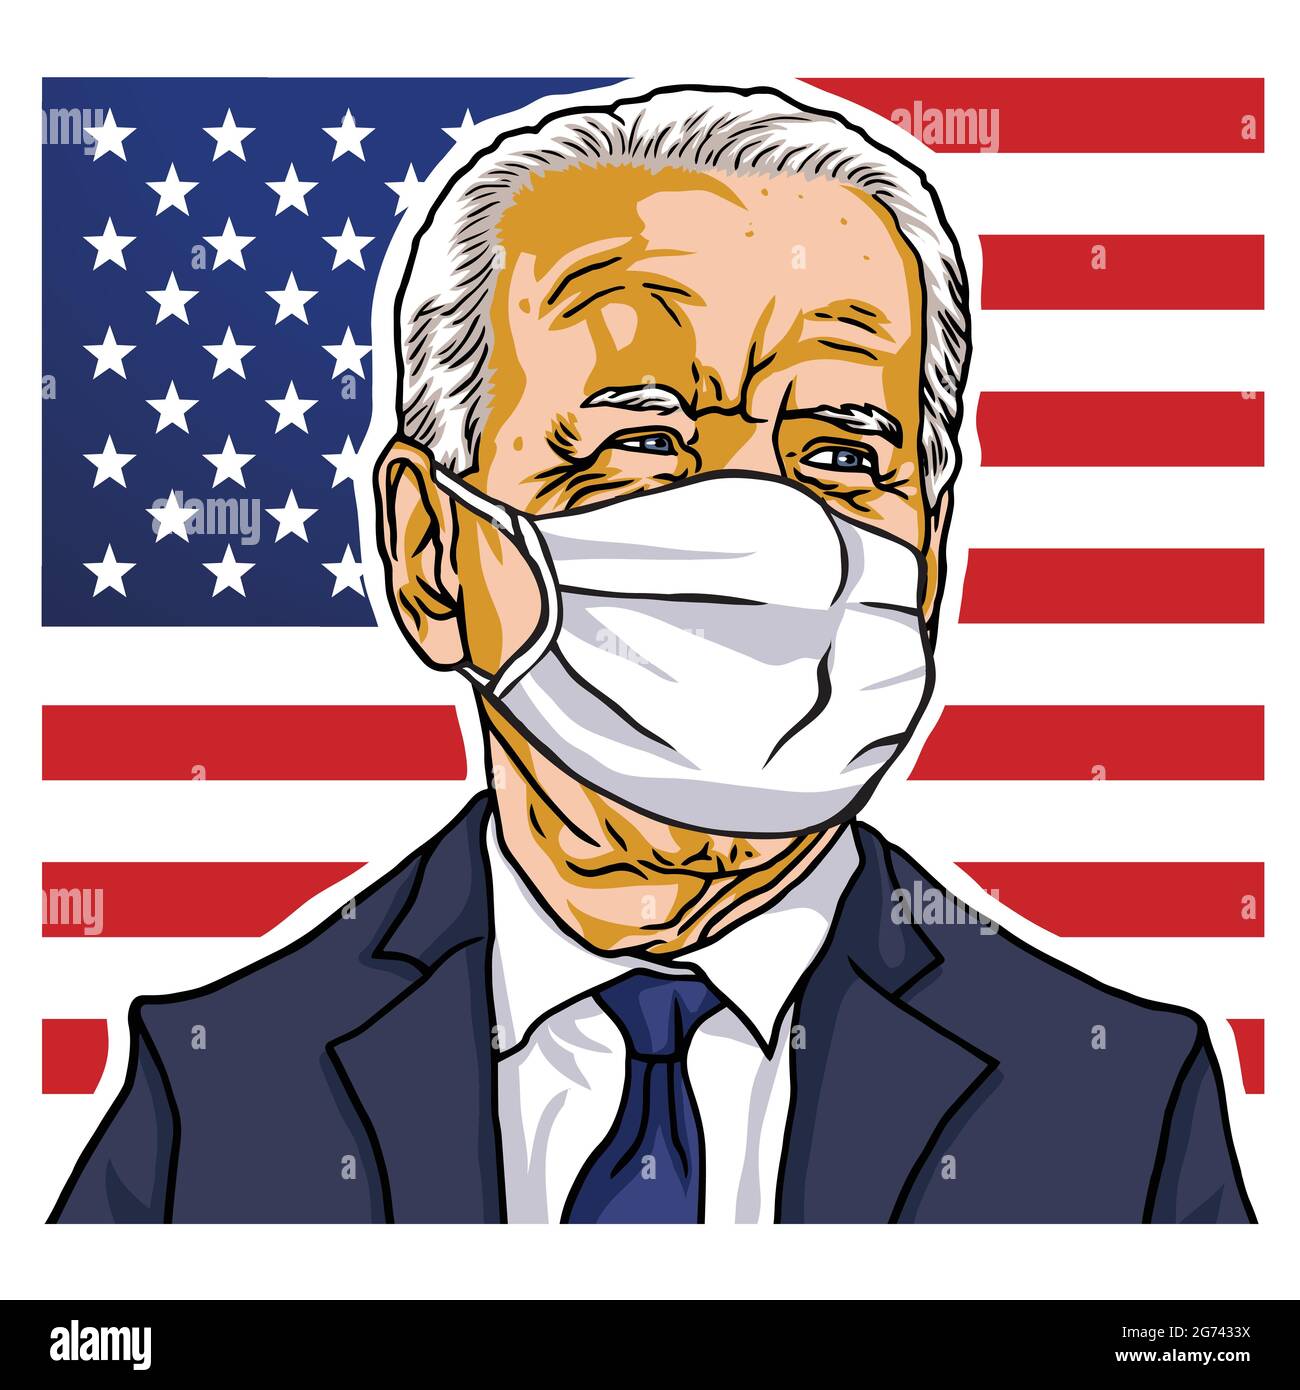 Zum Präsidenten der Vereinigten Staaten von Amerika gewählt, Joe Biden trägt Maske Porträt, Vektor Cartoon Karikatur Zeichnung Illustration Design Stock Vektor